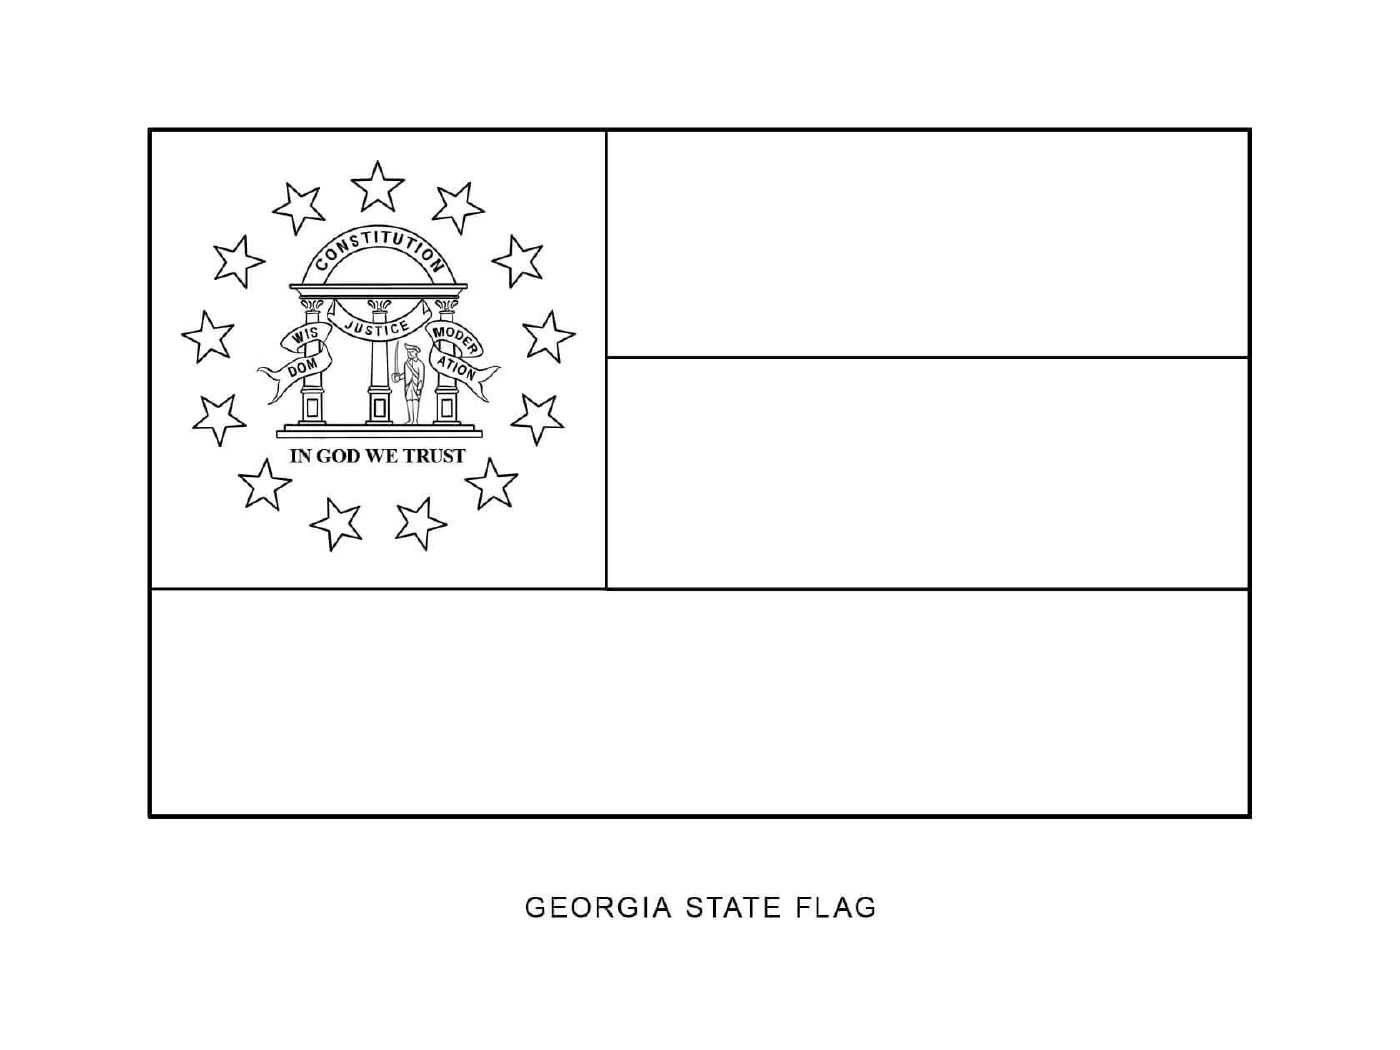  जार्जिया की स्थिति के ध्वज 